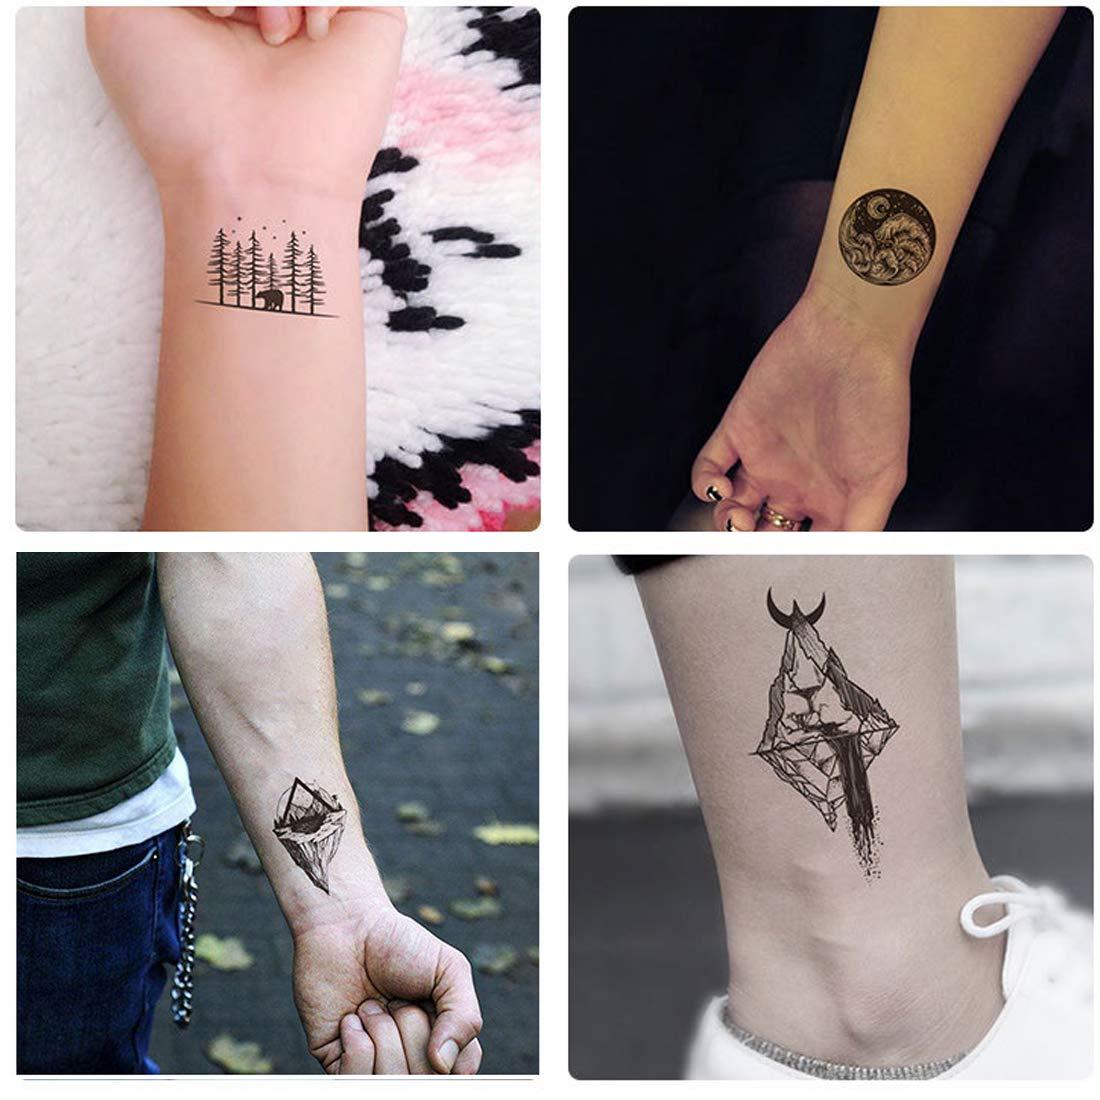 Floral wrist tattoo Flower wrist tattoo Wrist tattoo designs Feminine wrist  tattoo Small w… | Forearm flower tattoo, Flower wrist tattoos, Tattoos for  women flowers